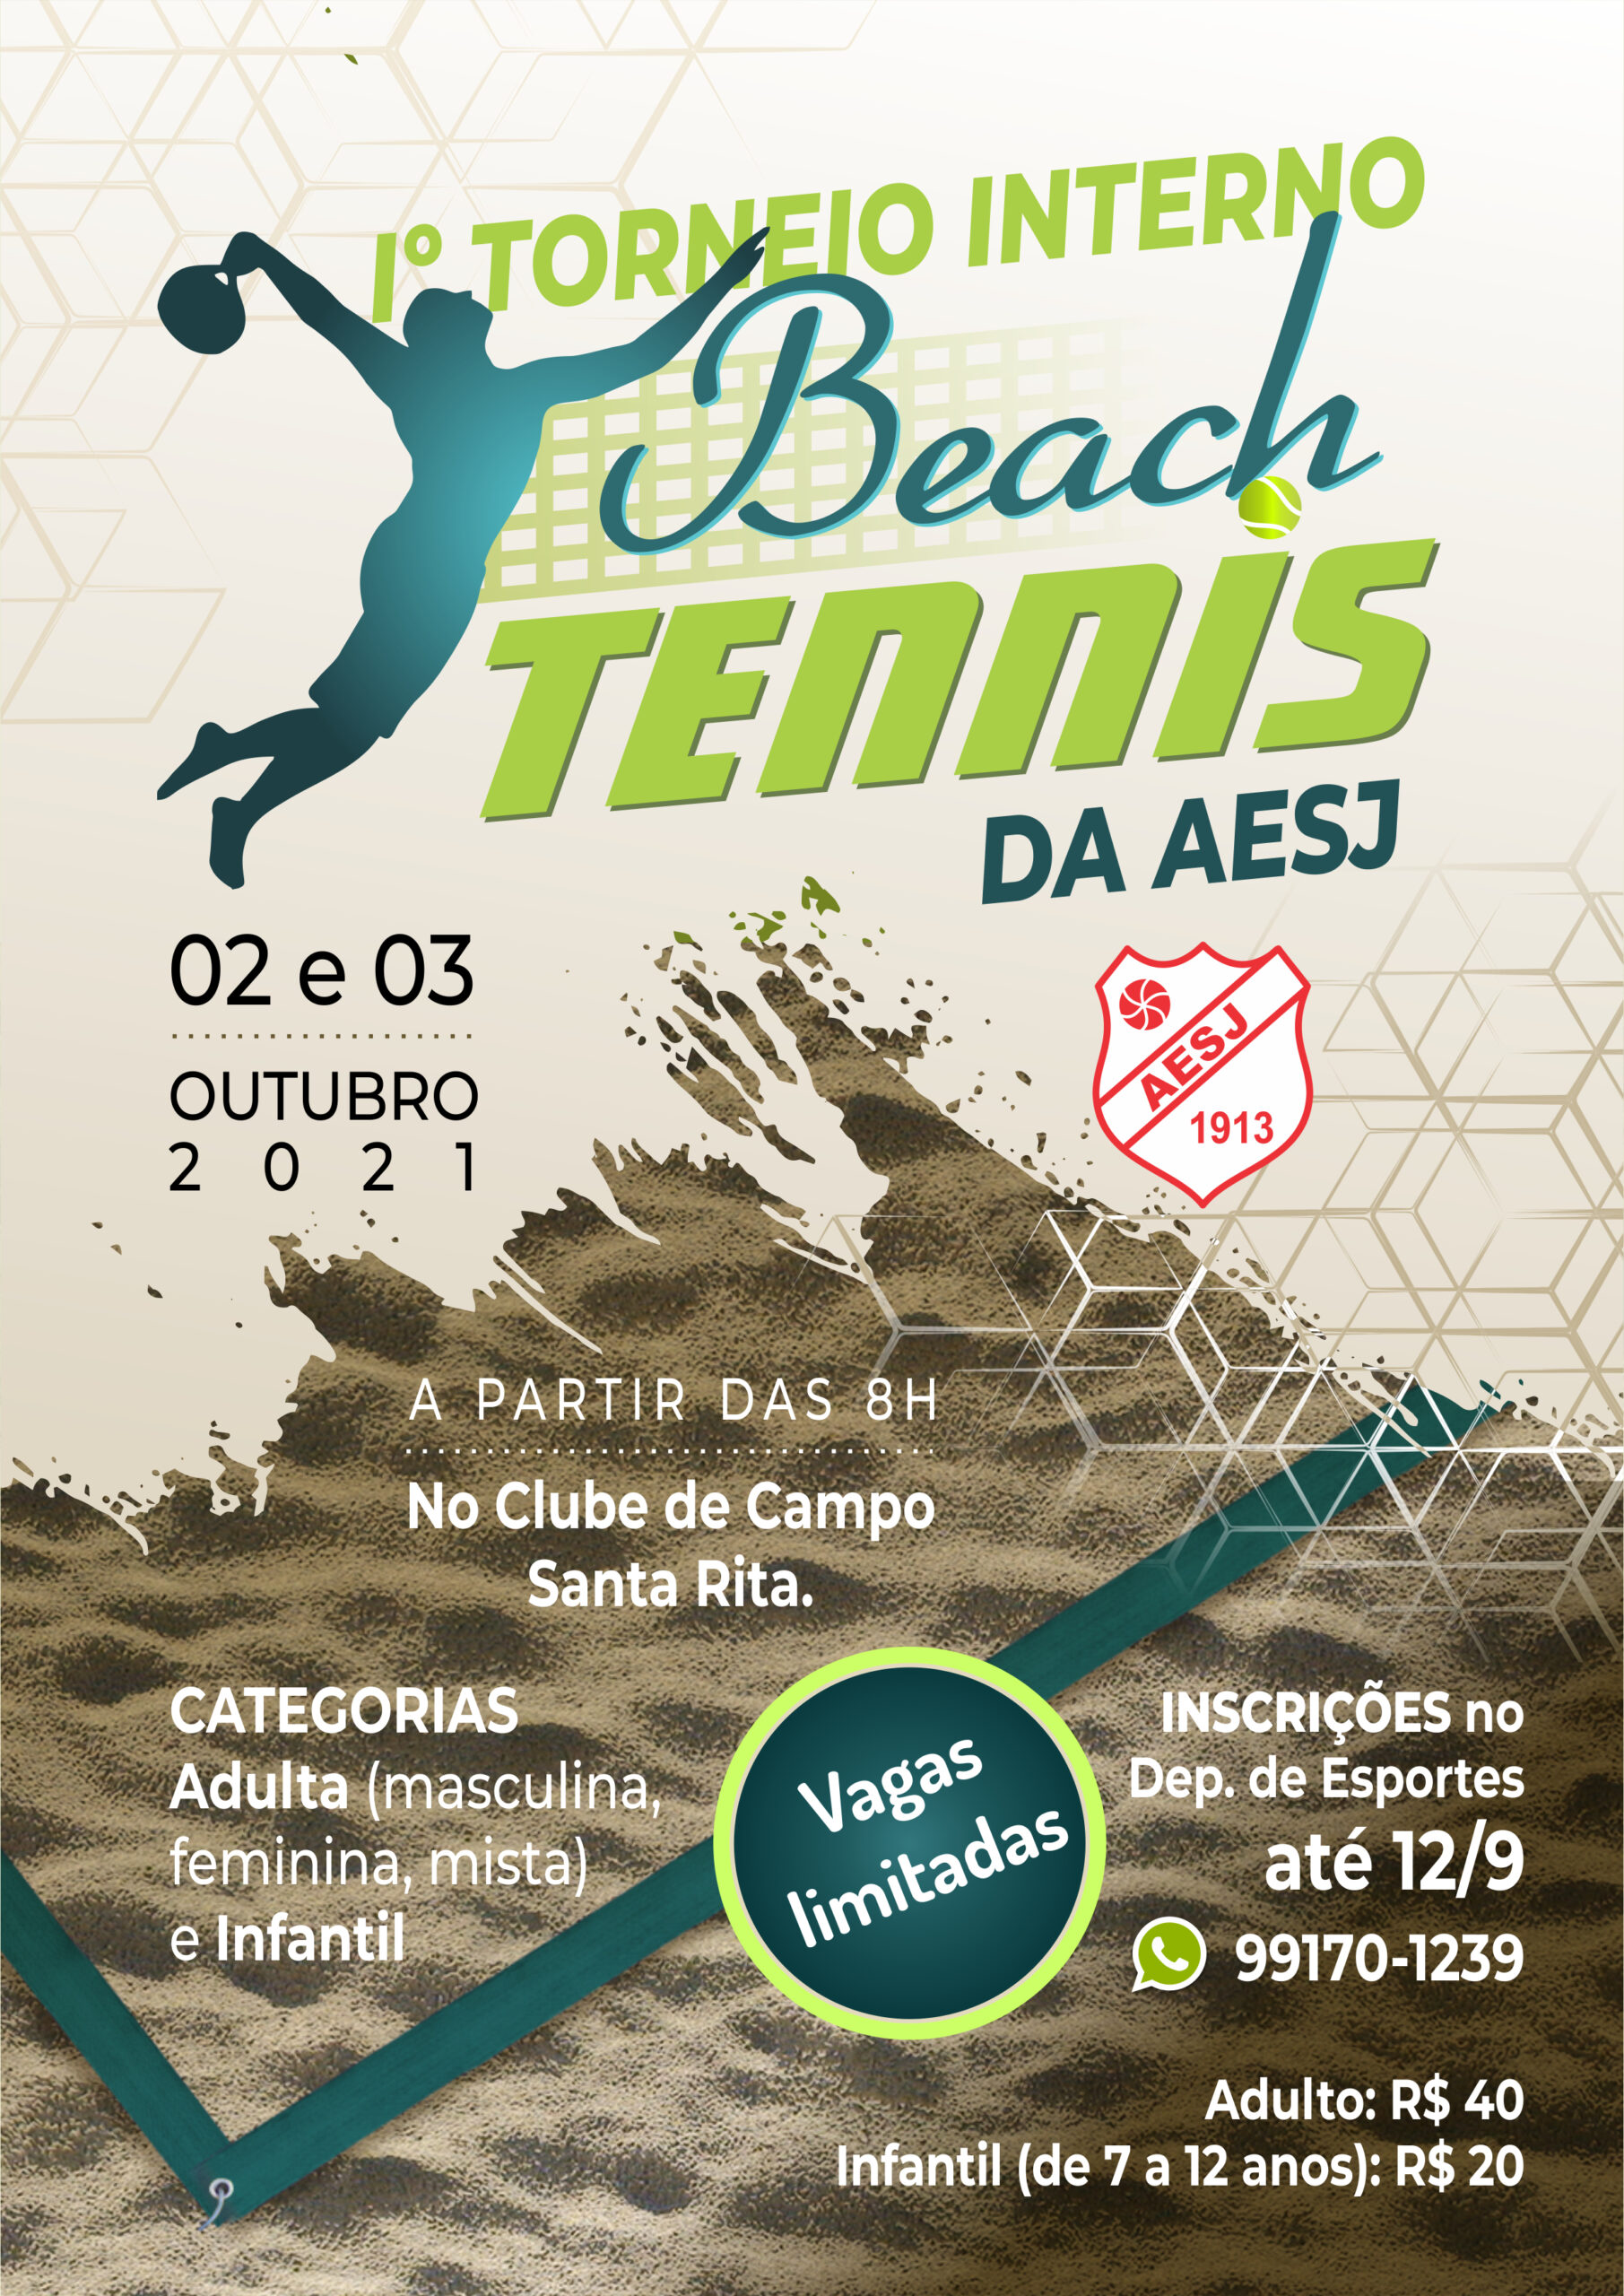 Vem aí o 1º Torneio Interno de Tênis de Mesa no Itaguará! - Itaguará  Country Clube